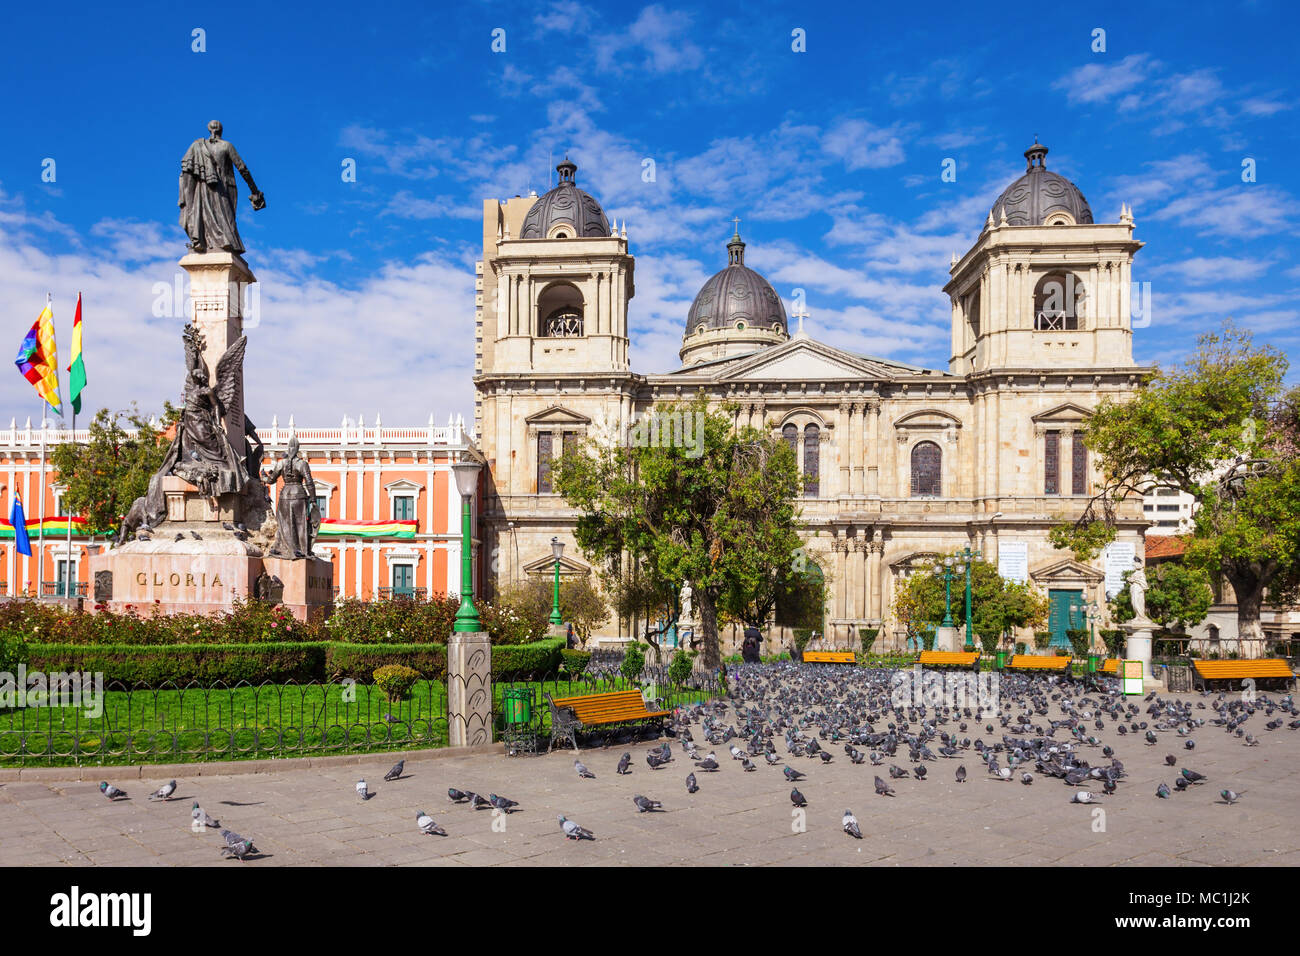 Metropolitan Cathedral is located on Plaza Murillo Square in La Paz, Bolivia Stock Photo